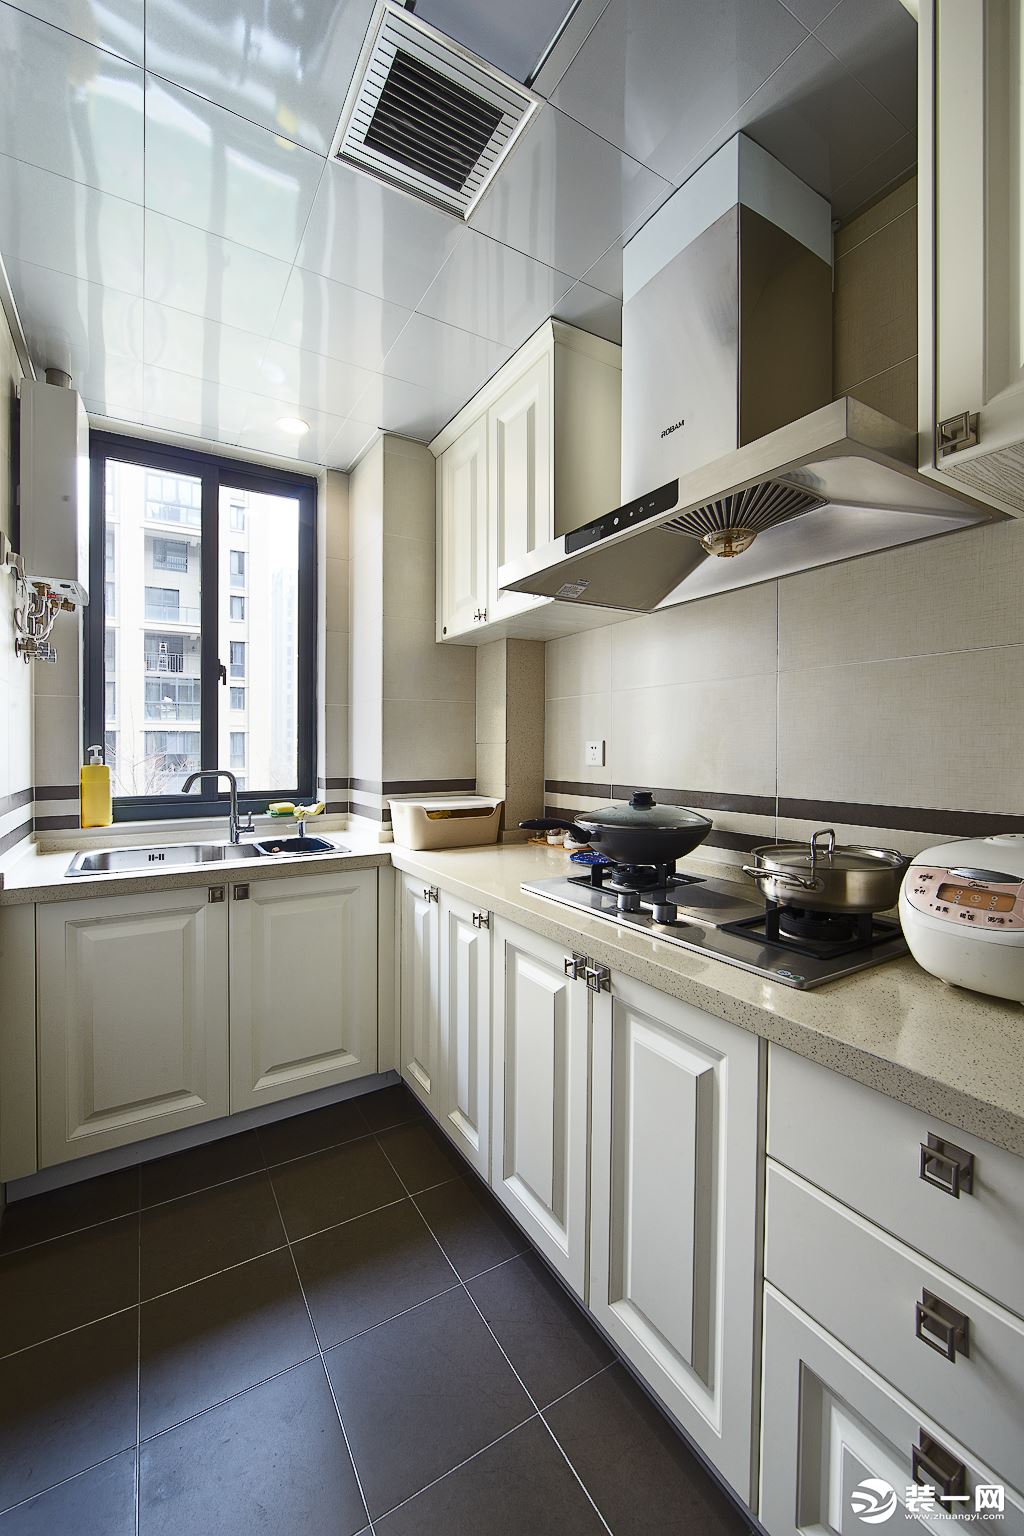 厨房以白色为主，不管是橱柜还是台面都采用浅白色，清爽又干净